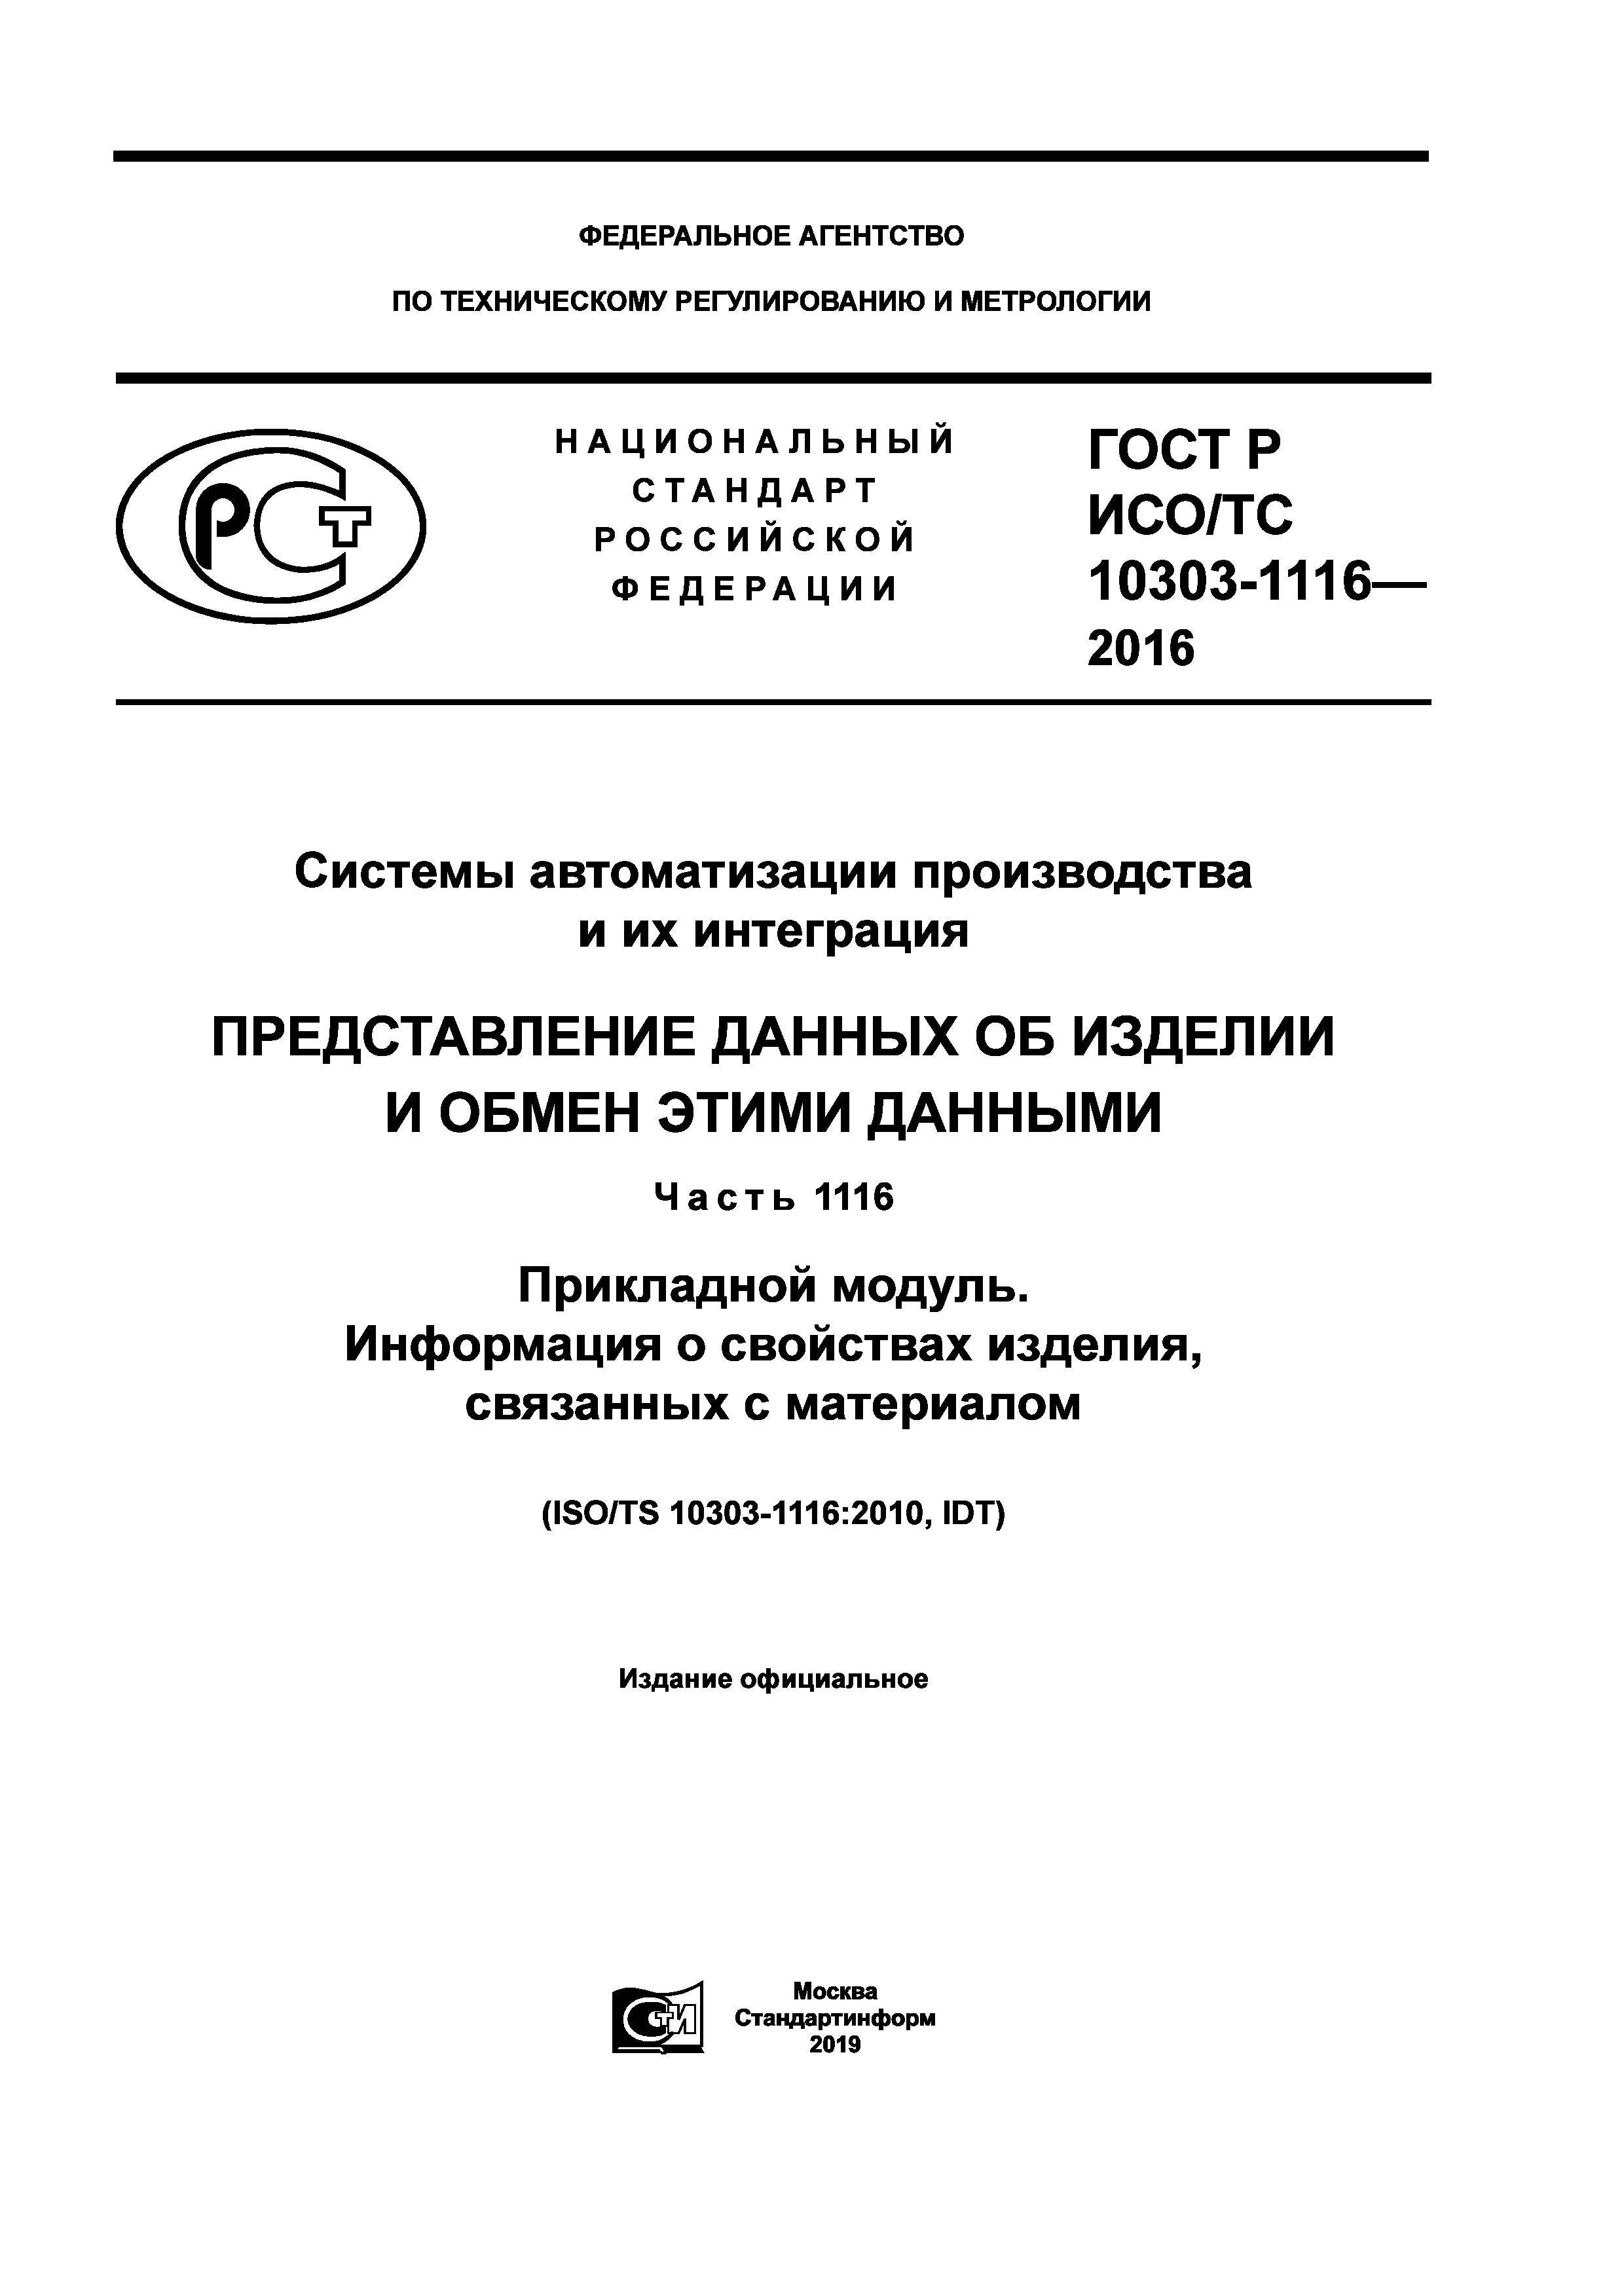 ГОСТ Р ИСО/ТС 10303-1116-2016